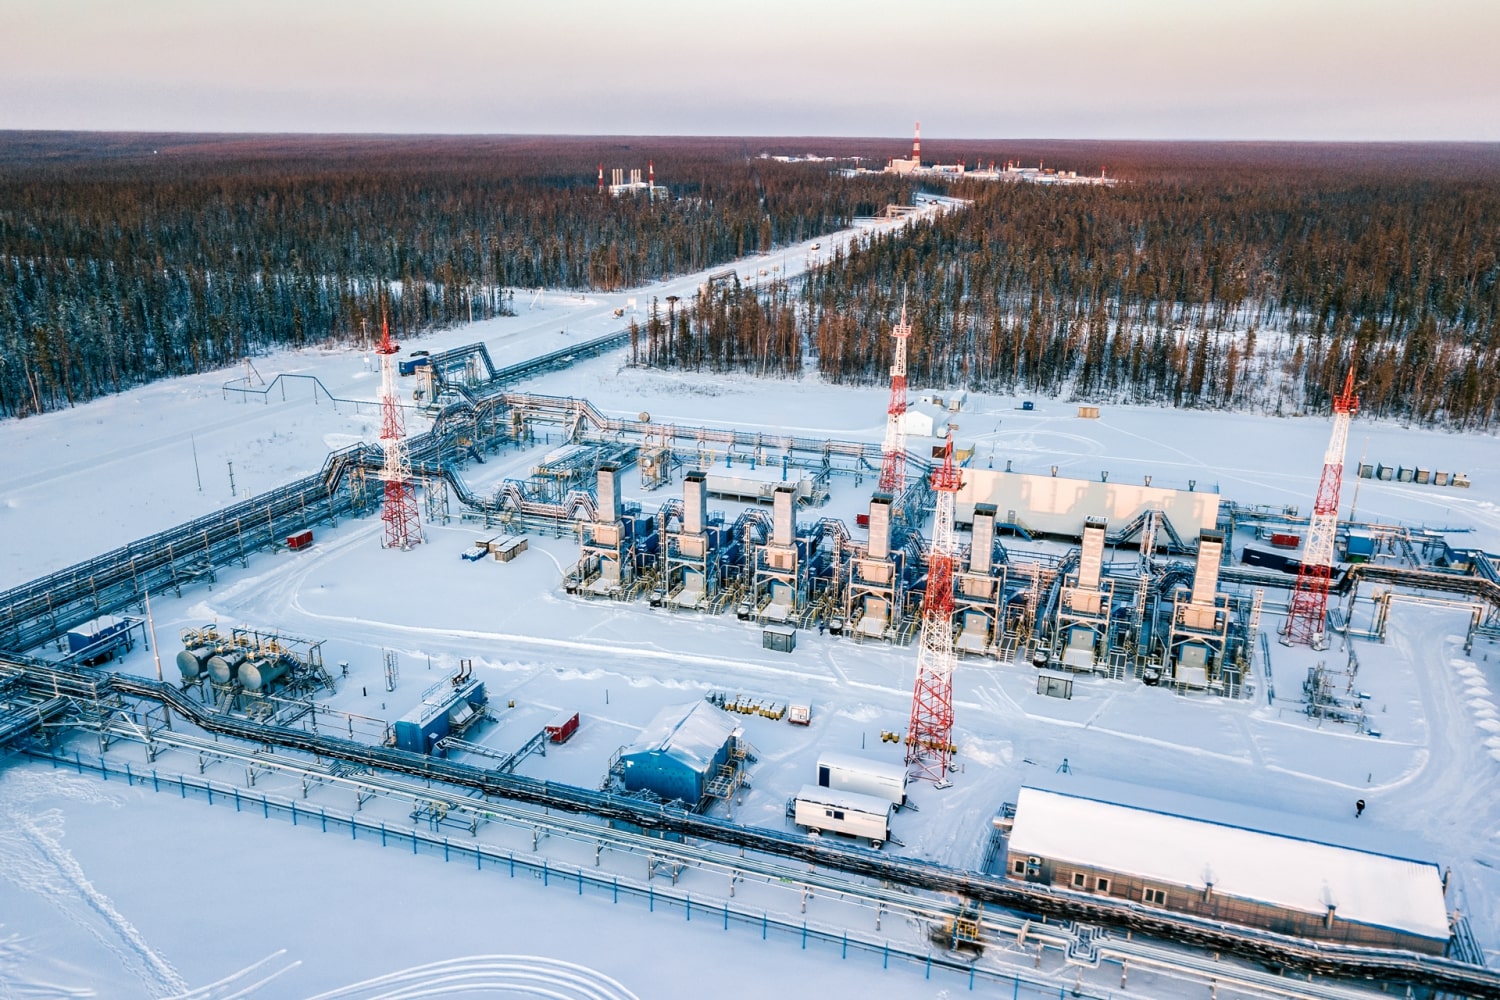 Đặc điểm pháp lý nổi bật trong qui định đối với việc sử dụng tài nguyên dầu và khí của Liên bang Nga (Phần III)